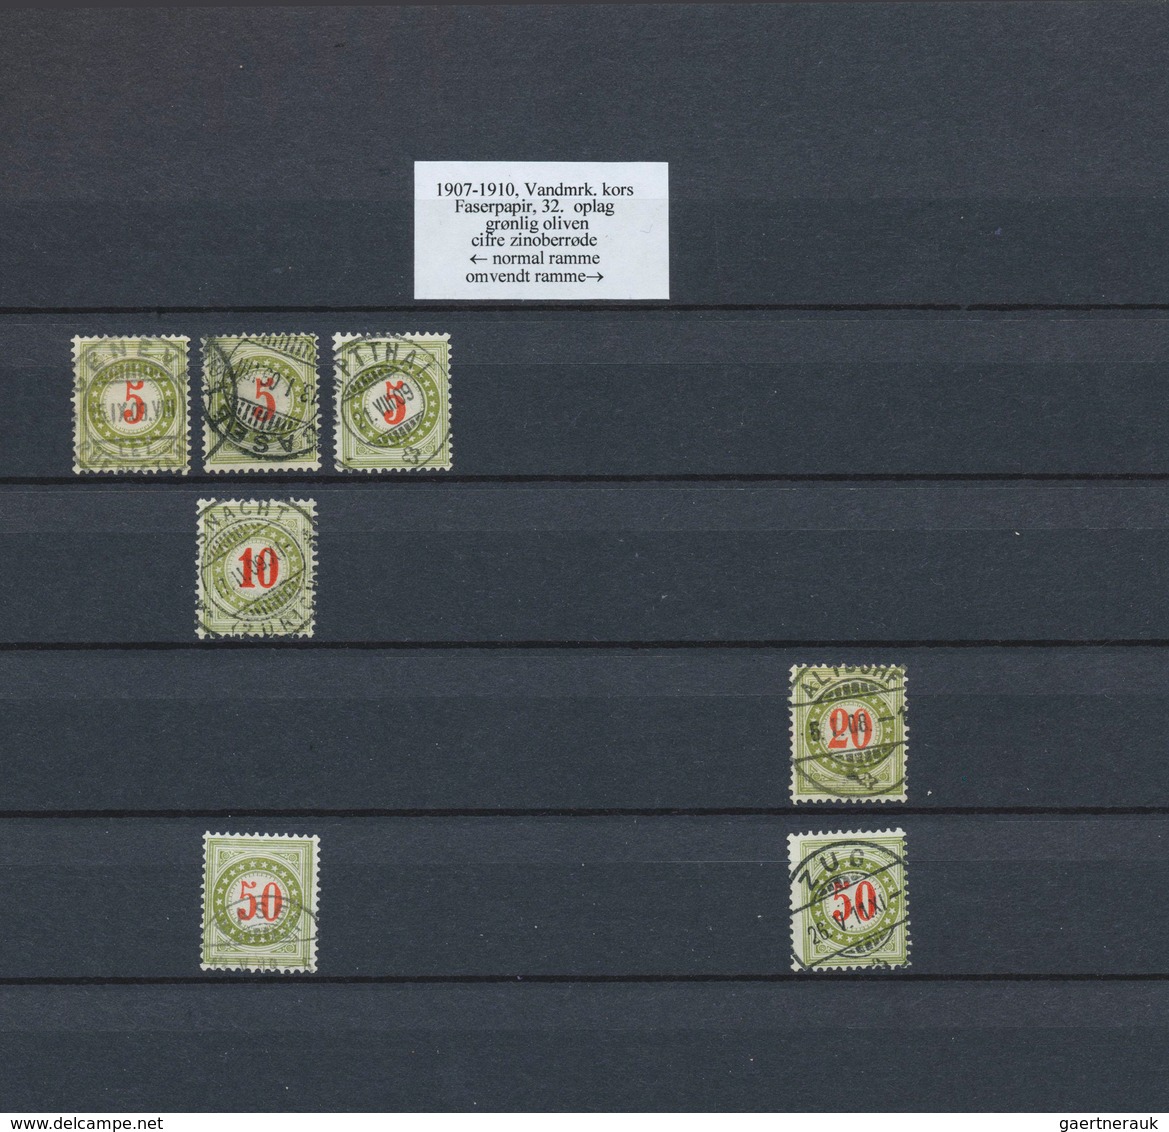 28146 Schweiz - Portomarken: 1878-1910: Umfangreiche Sammlung gestempelter Marken der verschiedenen Ausgab